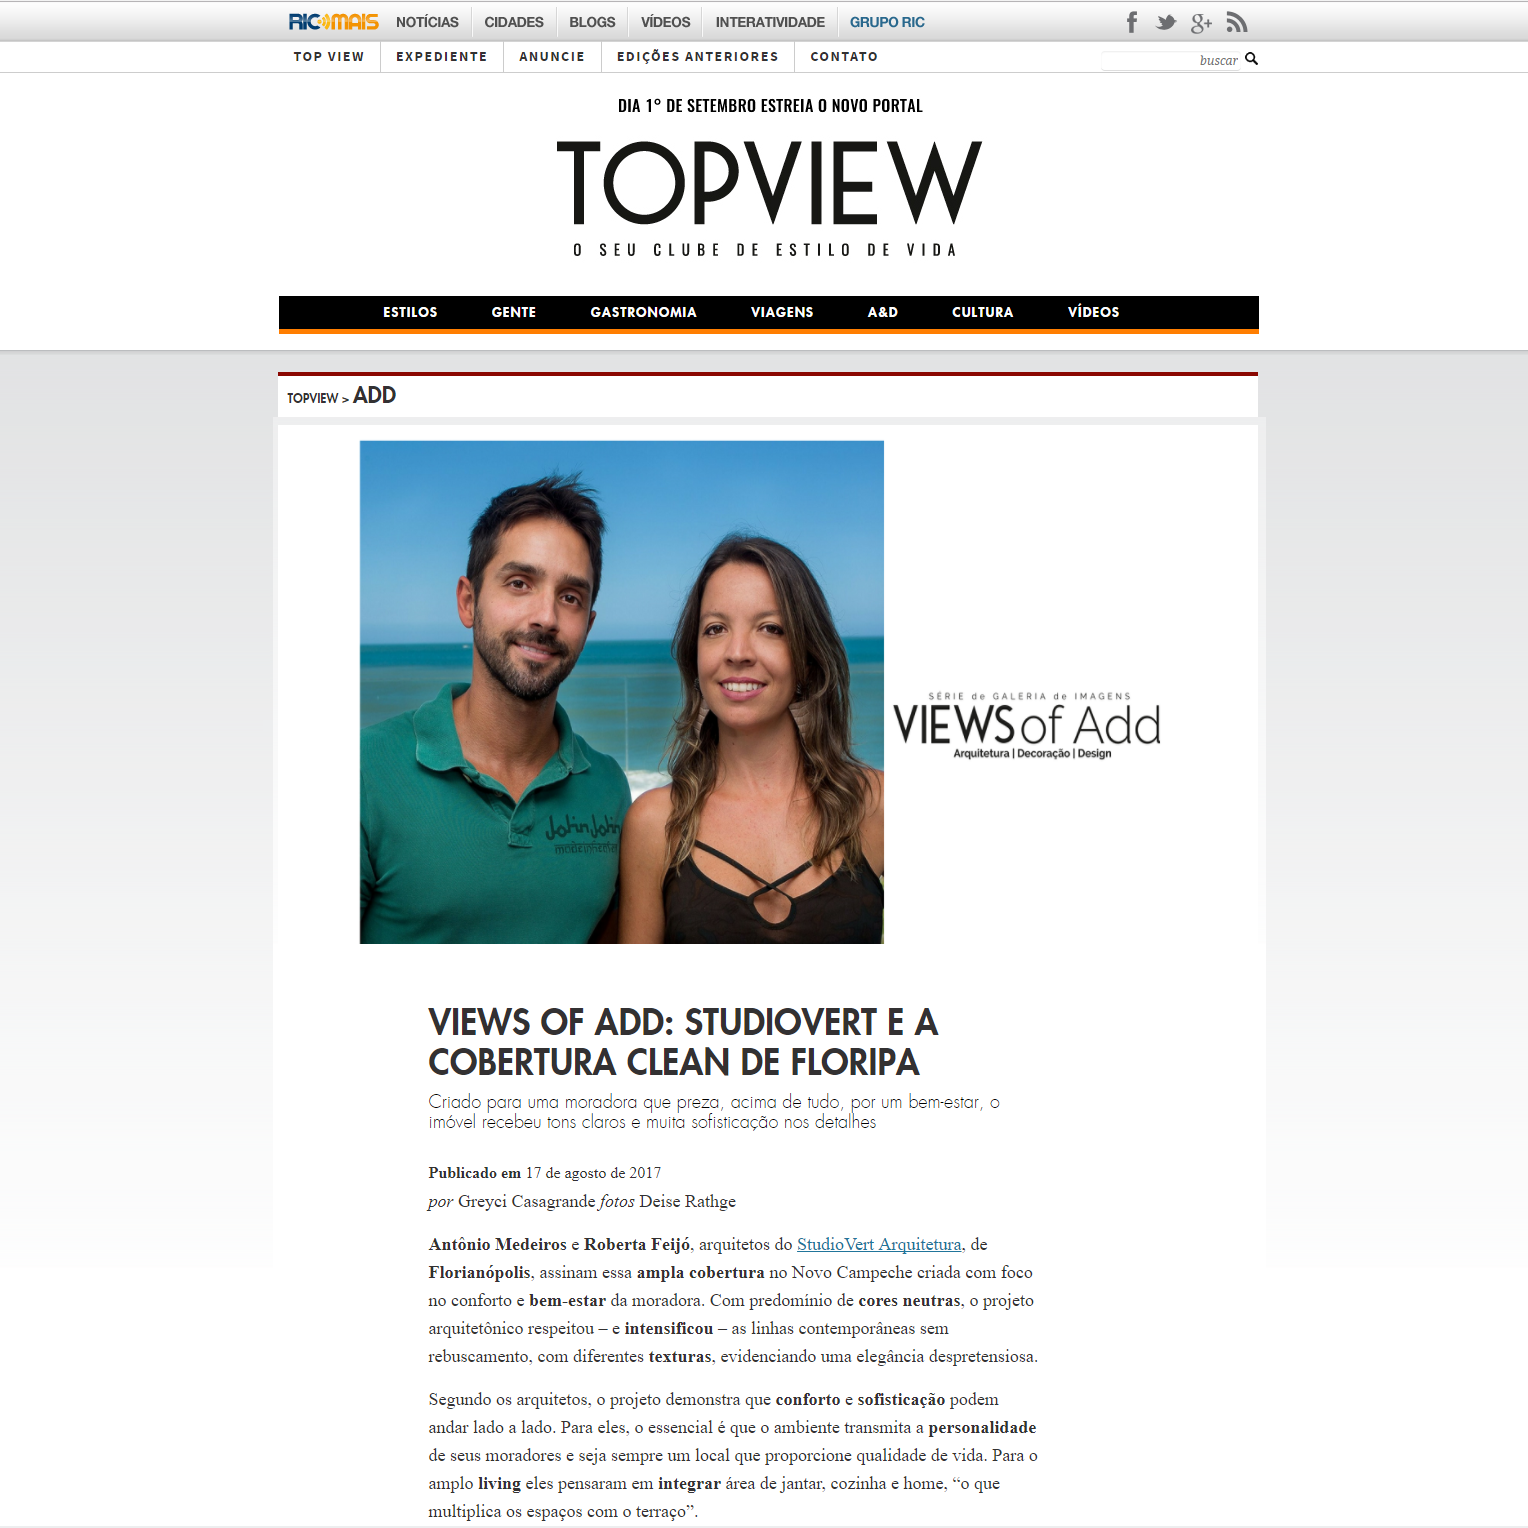 Revista Topview – Studiovert e a cobertura clean de Floripa